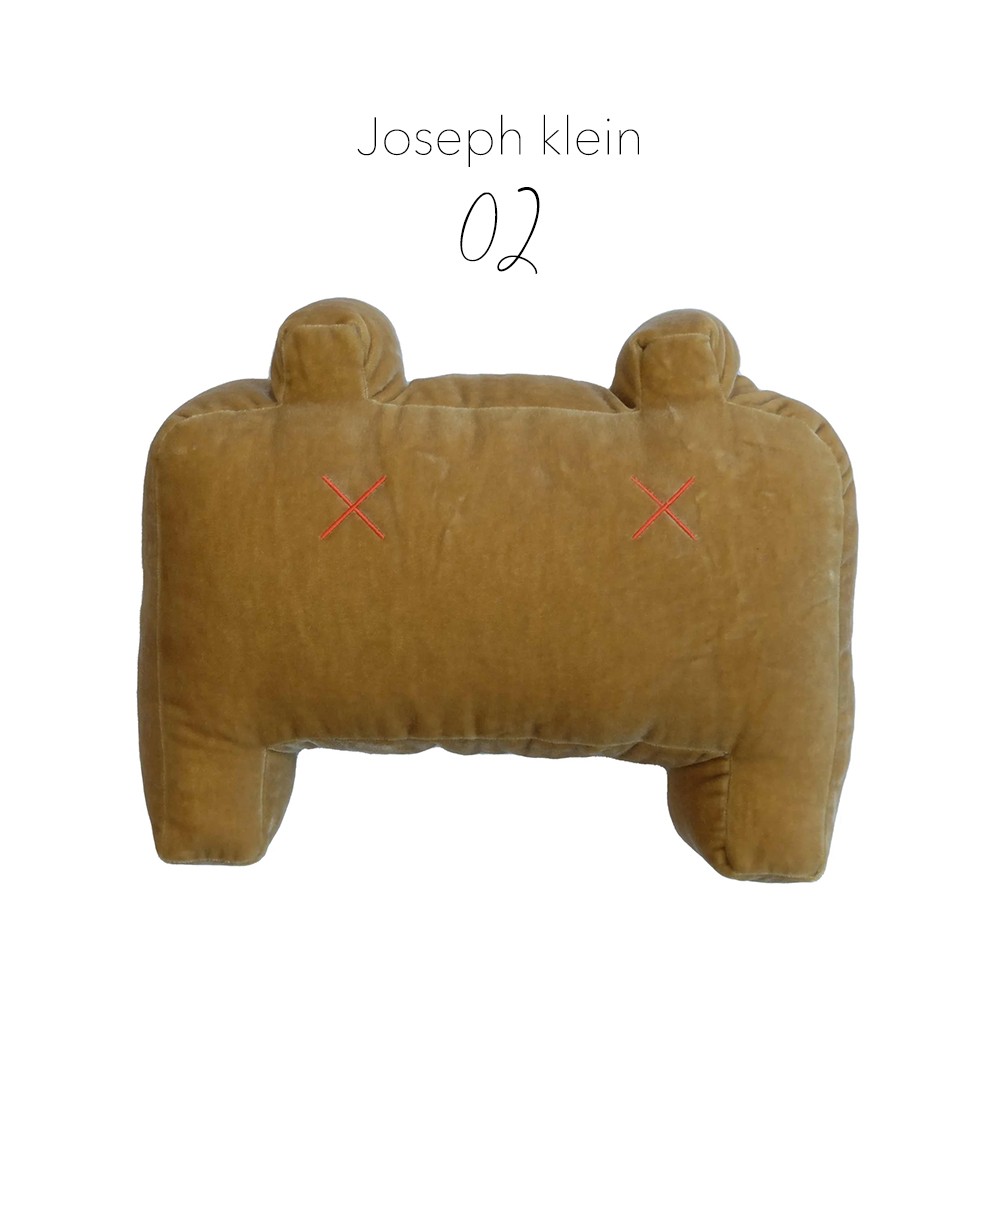 Produktbild des "Monster Joseph klein" in braun des Herstellers LPJ im RAUM Conceptstore